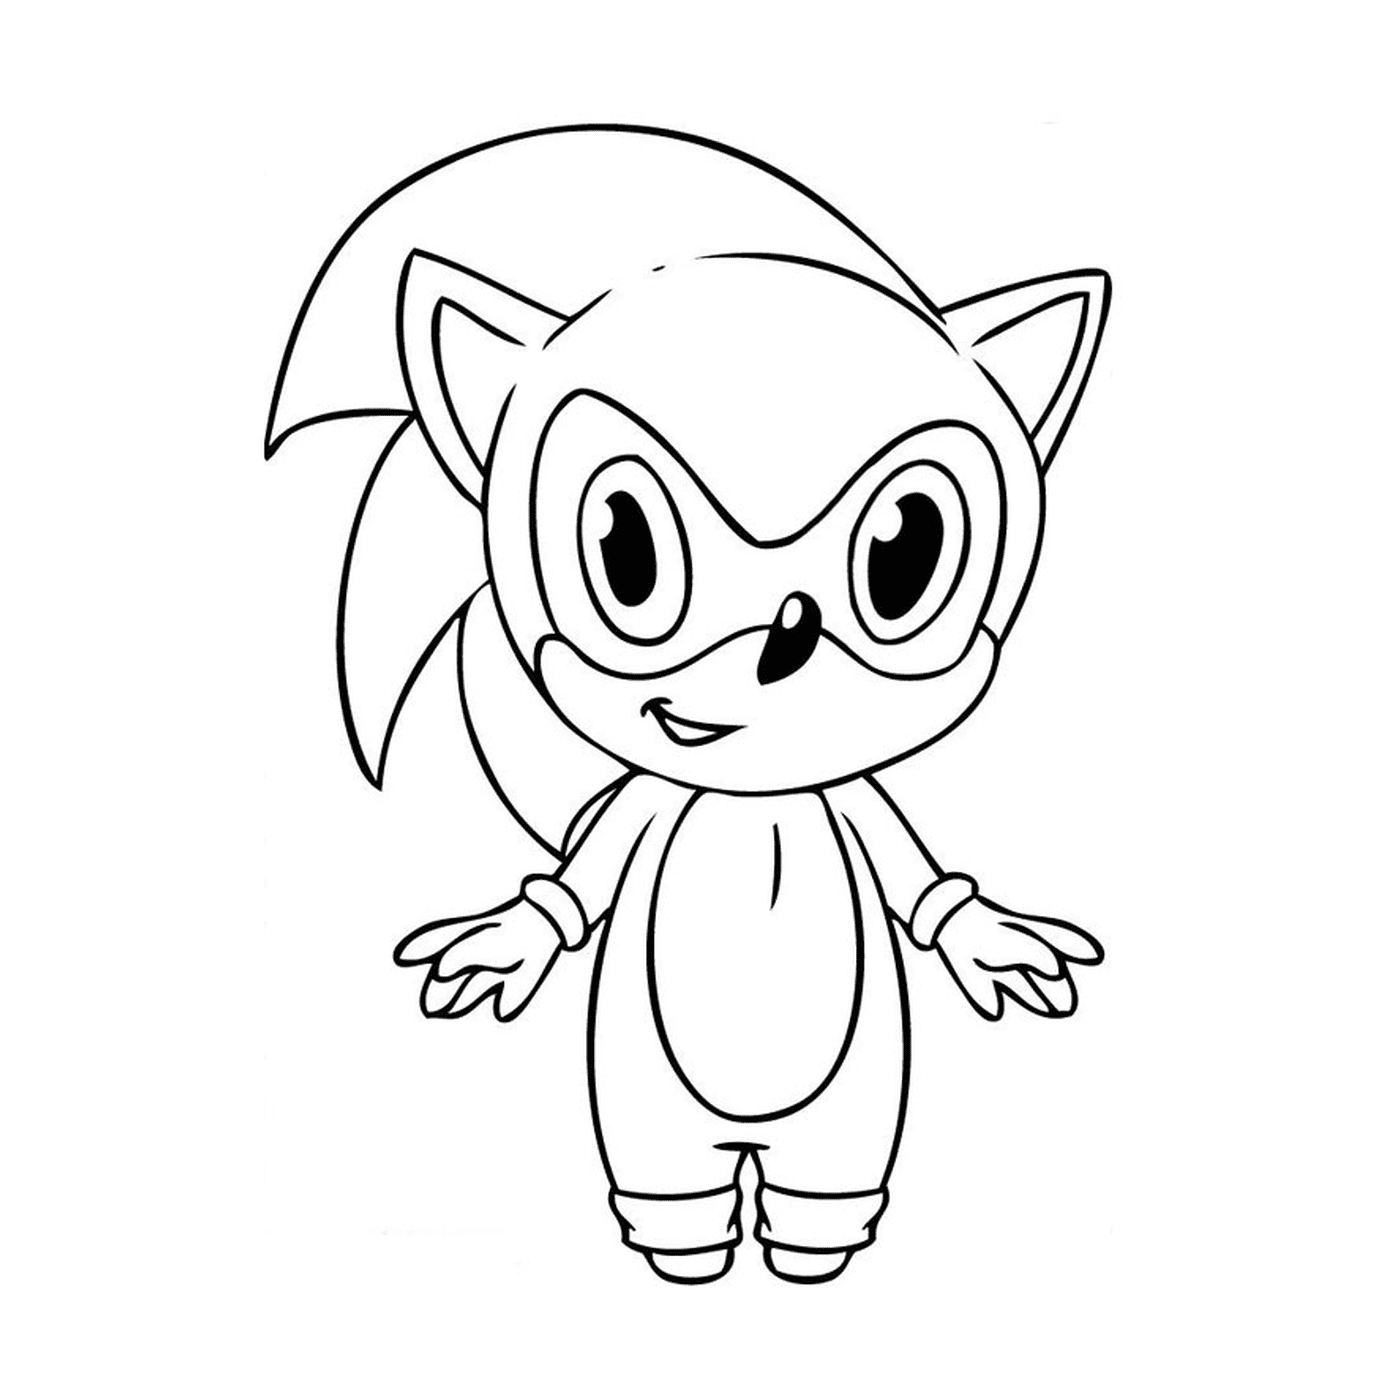  Junge Sonic der Igel 